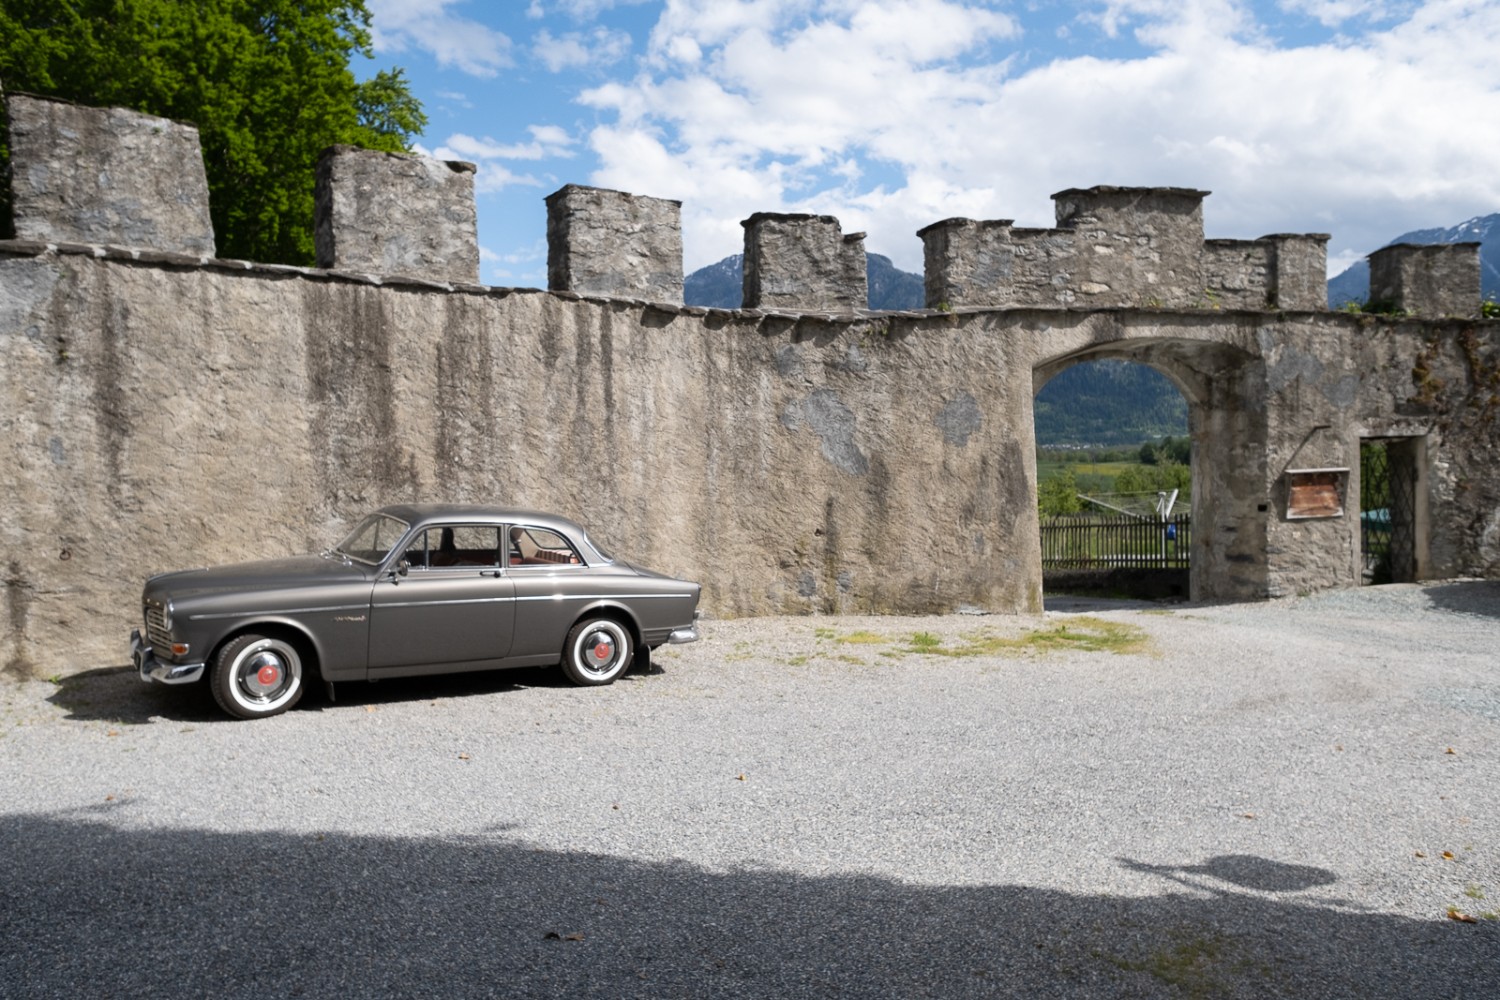 Au château de Rietberg, on peut admirer les puissants murs d‘enceinte. Photo: Markus Ruff